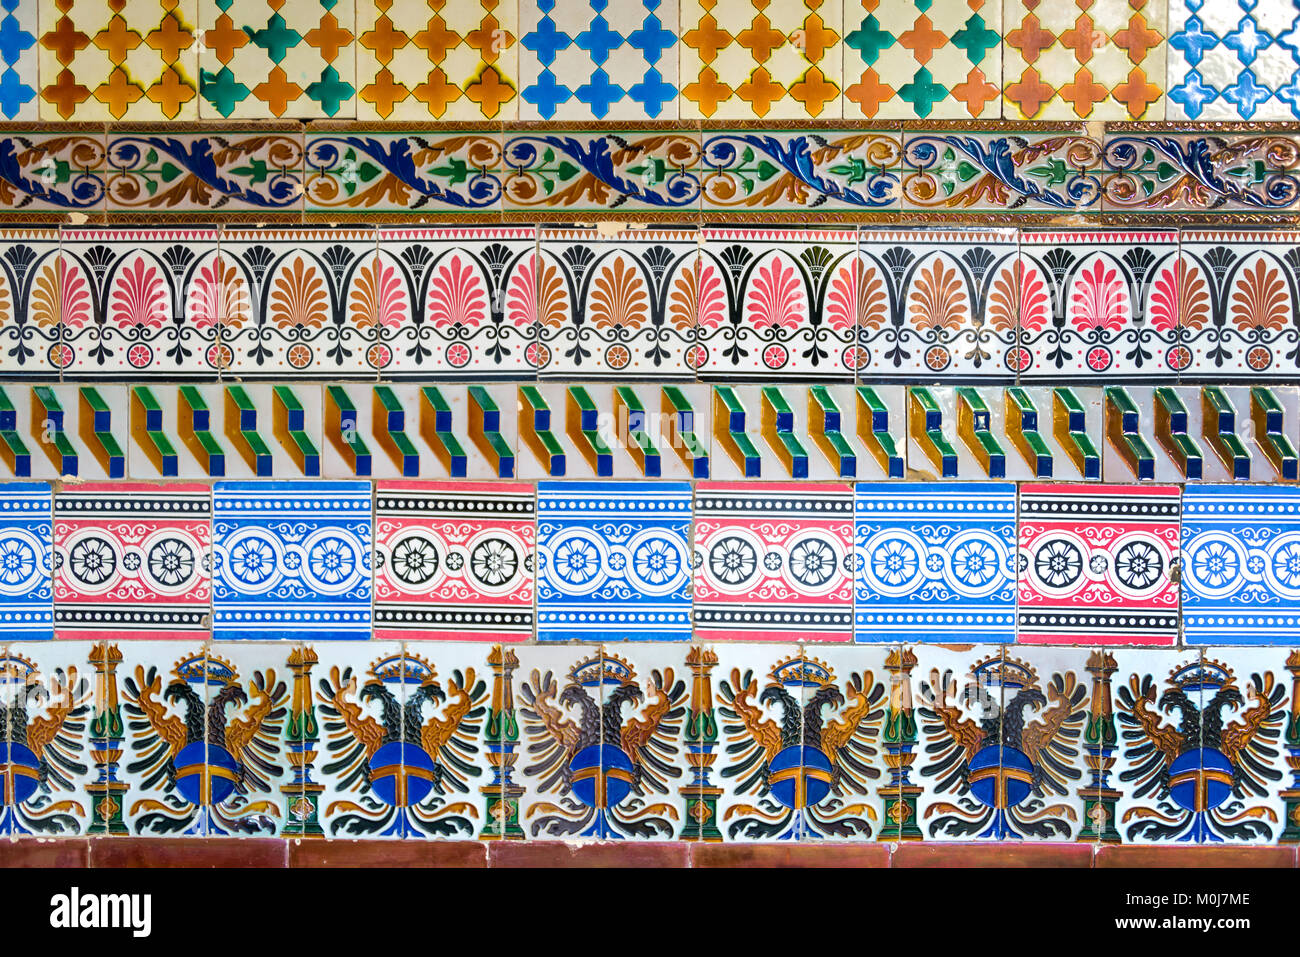 Mosaik der alten bunten Azulejos (spanische Keramikfliesen) an einer Wand Stockfoto